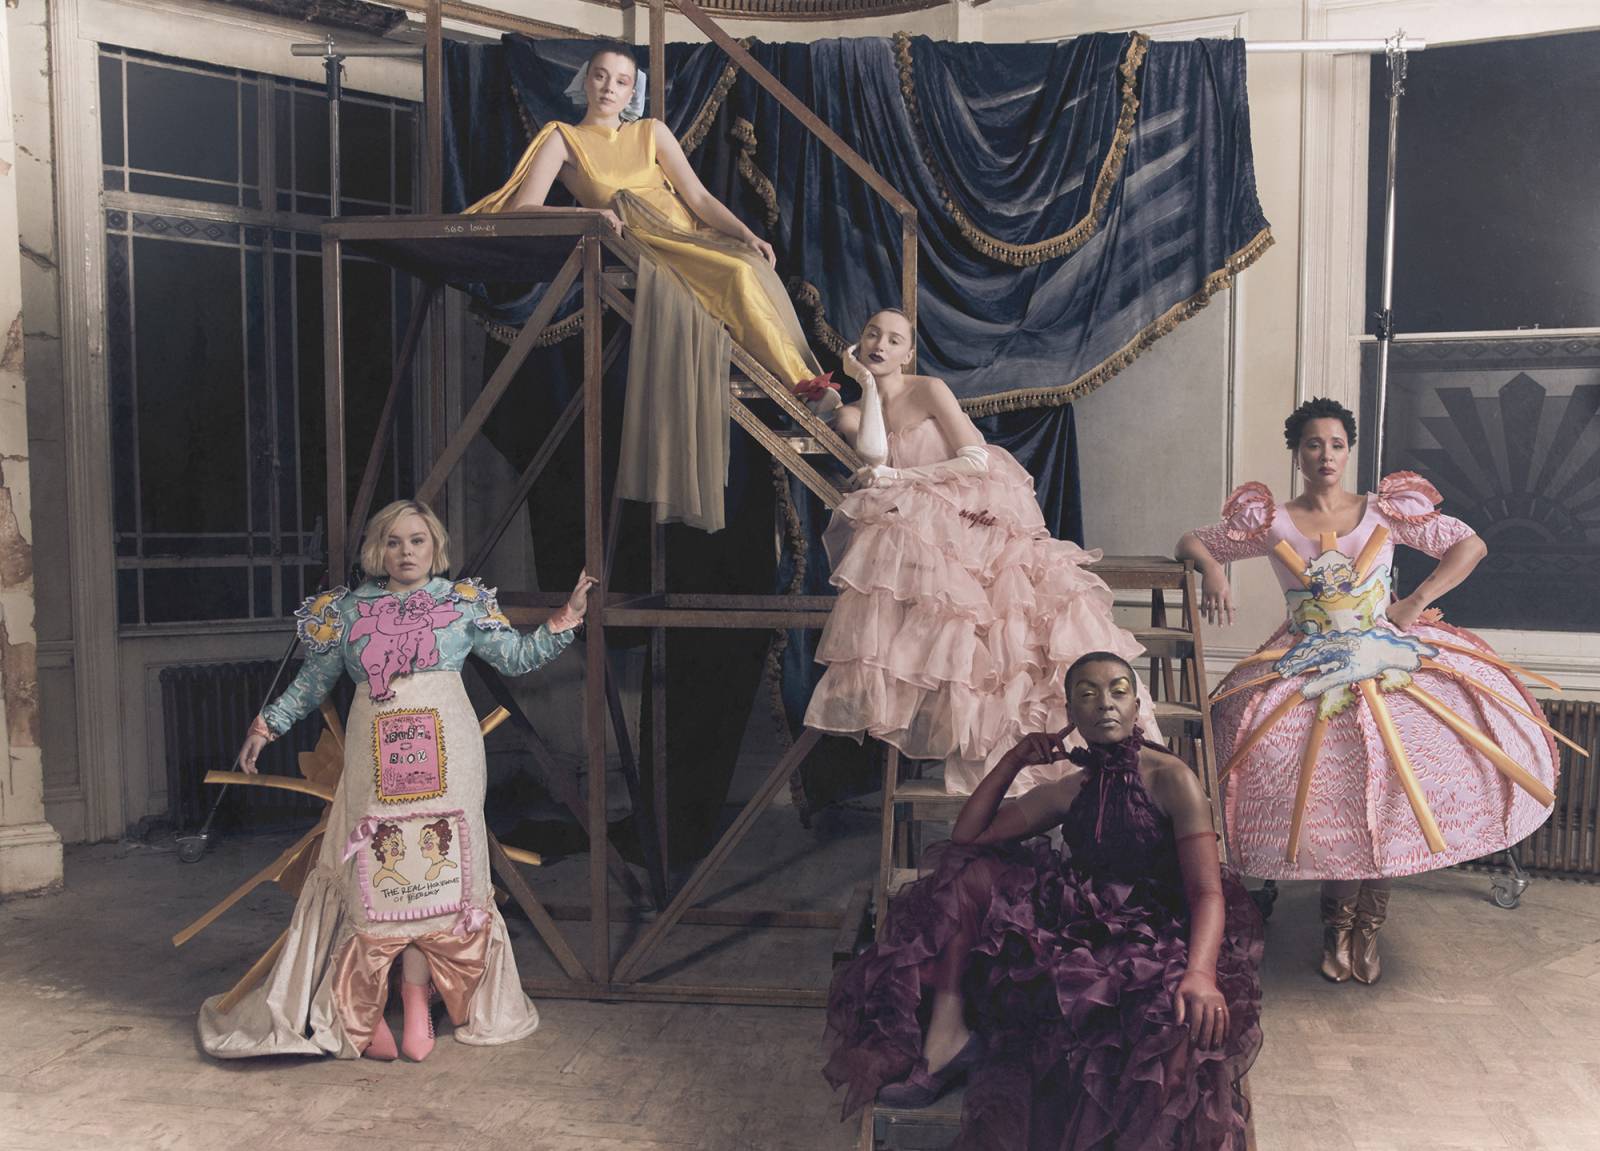 Od lewe: Nicola Coughlan w sukni Edwarda Mendozy, Claudia Jessie w kreacji Shanti Bell, Phoebe Dynevor w sukni Aurelii Fontany, Adjoa Andoh w sukni Aurelii Fontany i Golda Rosheuvel w sukni Edwarda Mendozy (Fot. Amber Pinkerton)